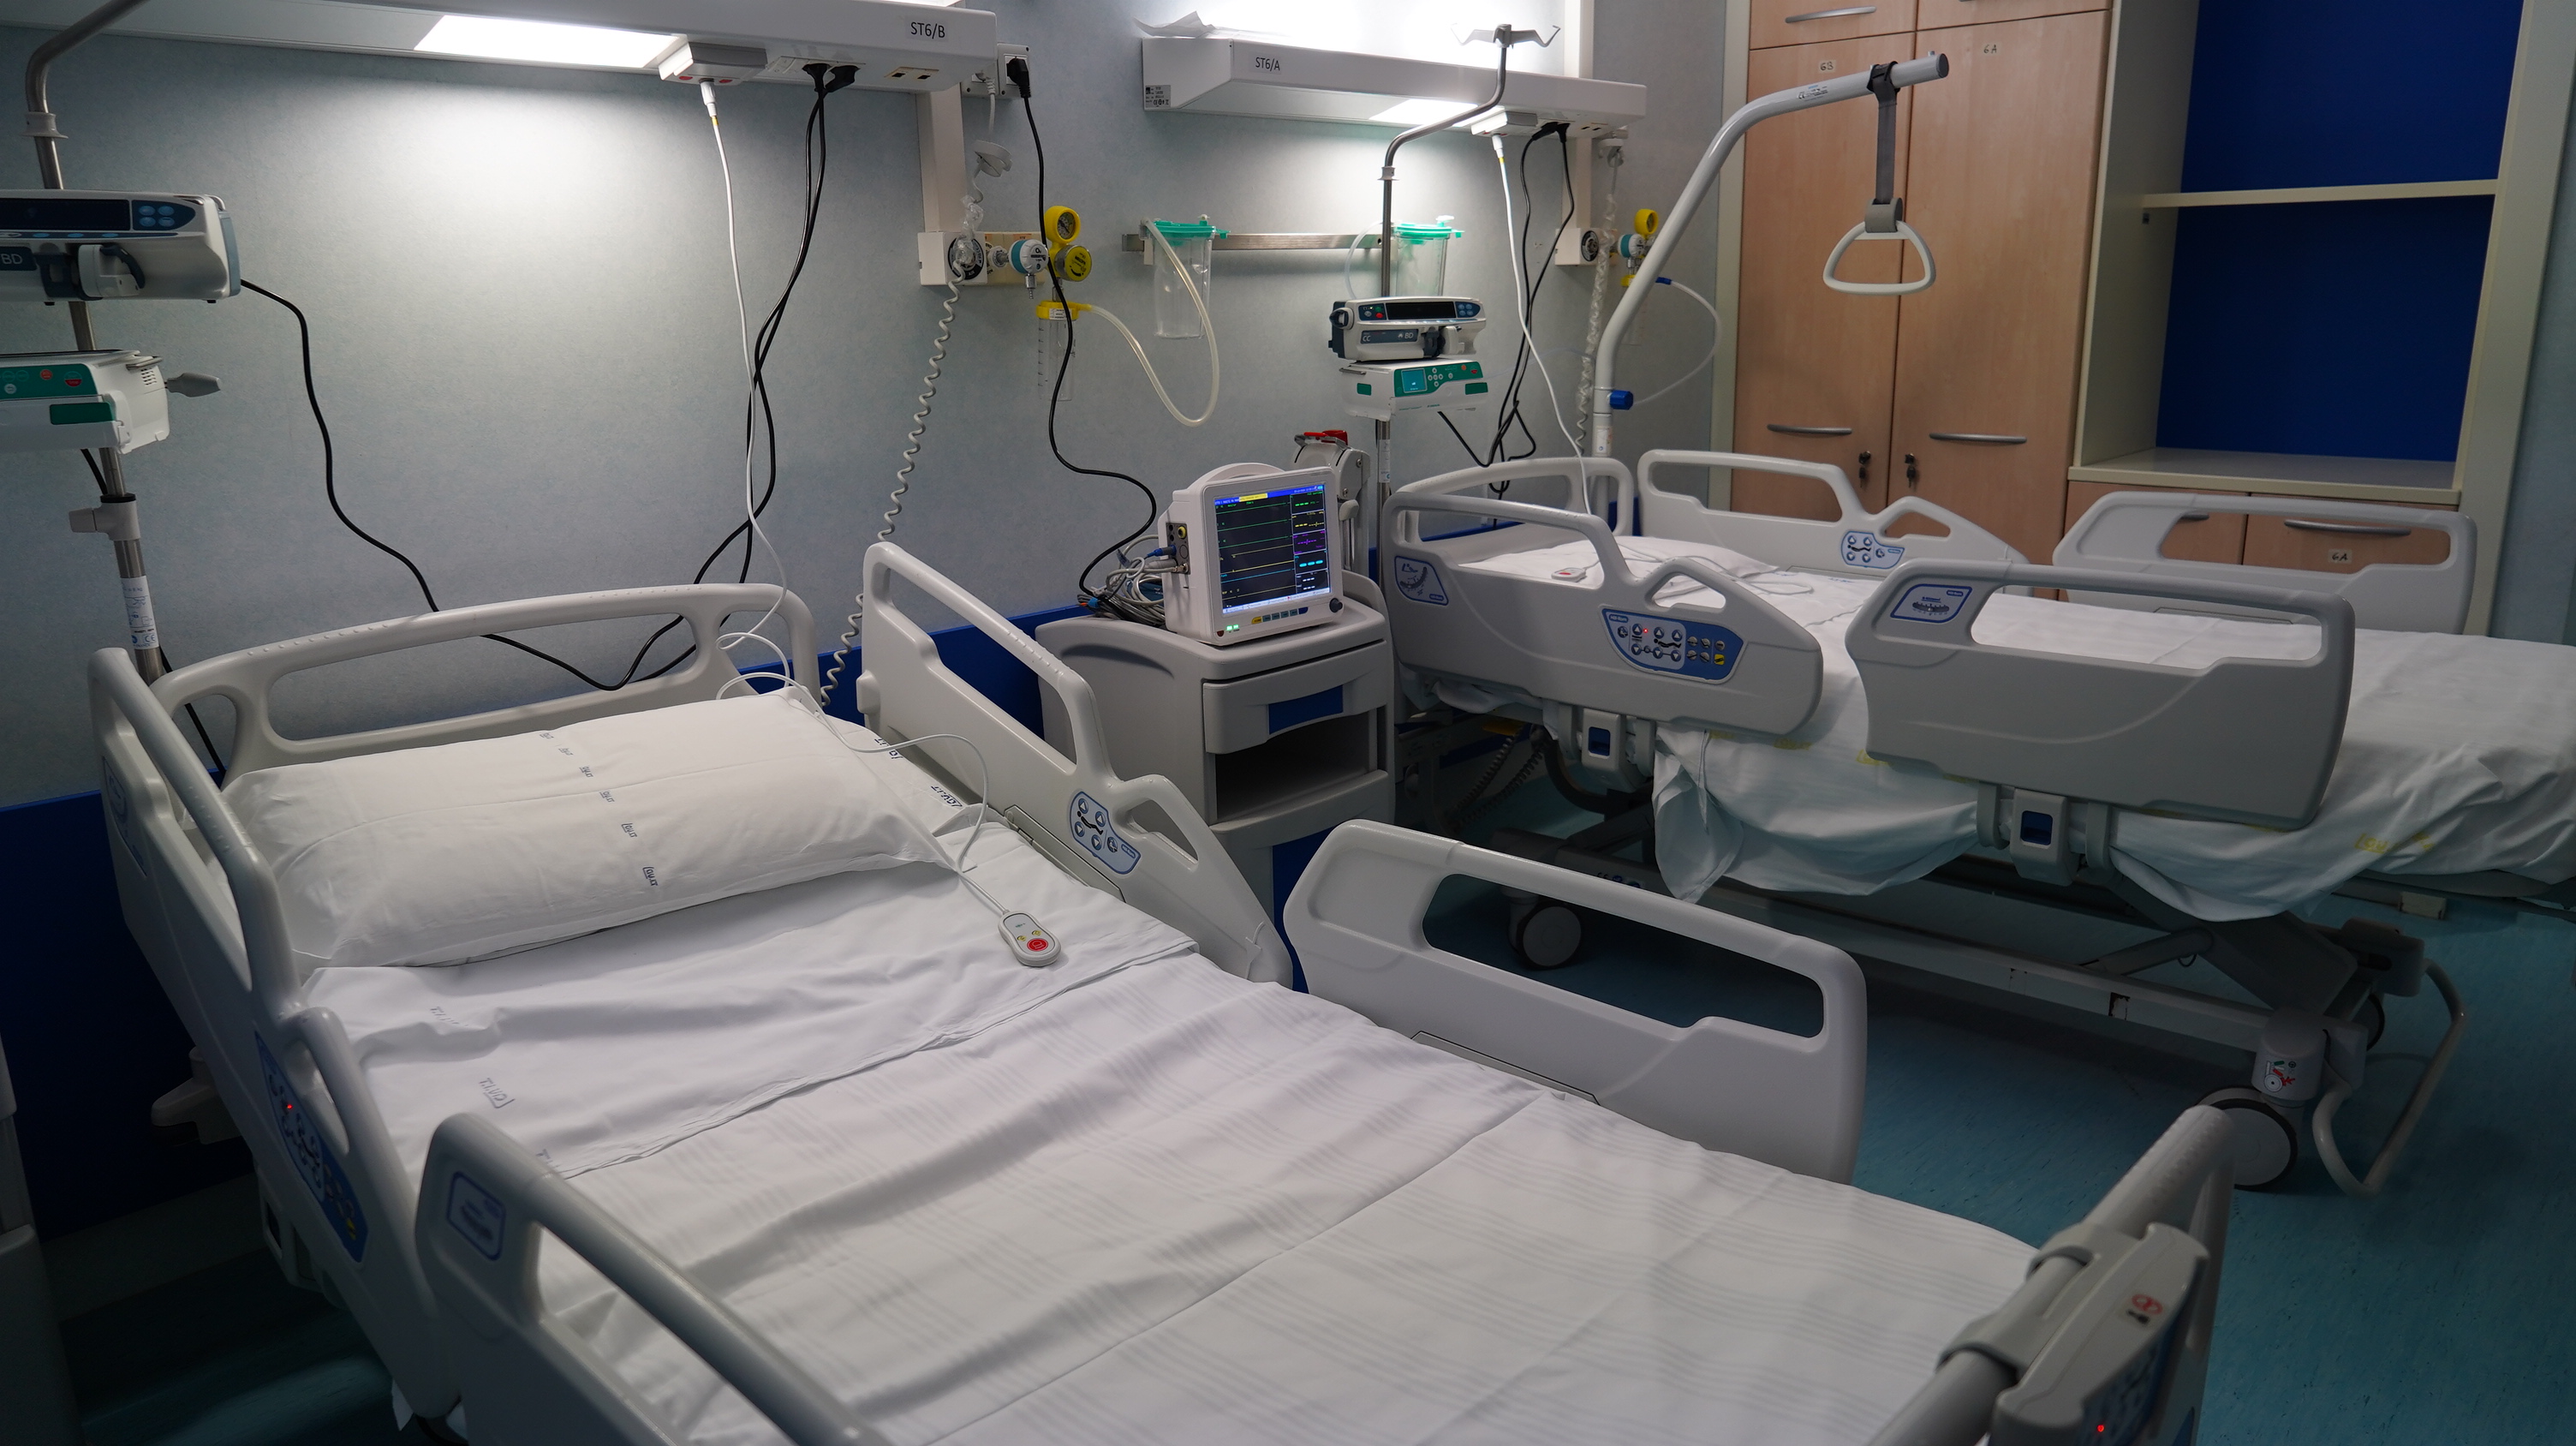 Galleria Apre il reparto Covid dell'Ospedale di Altamura: attivati 20 posti letto, ampliabili sino a 60 - Diapositiva 6 di 9